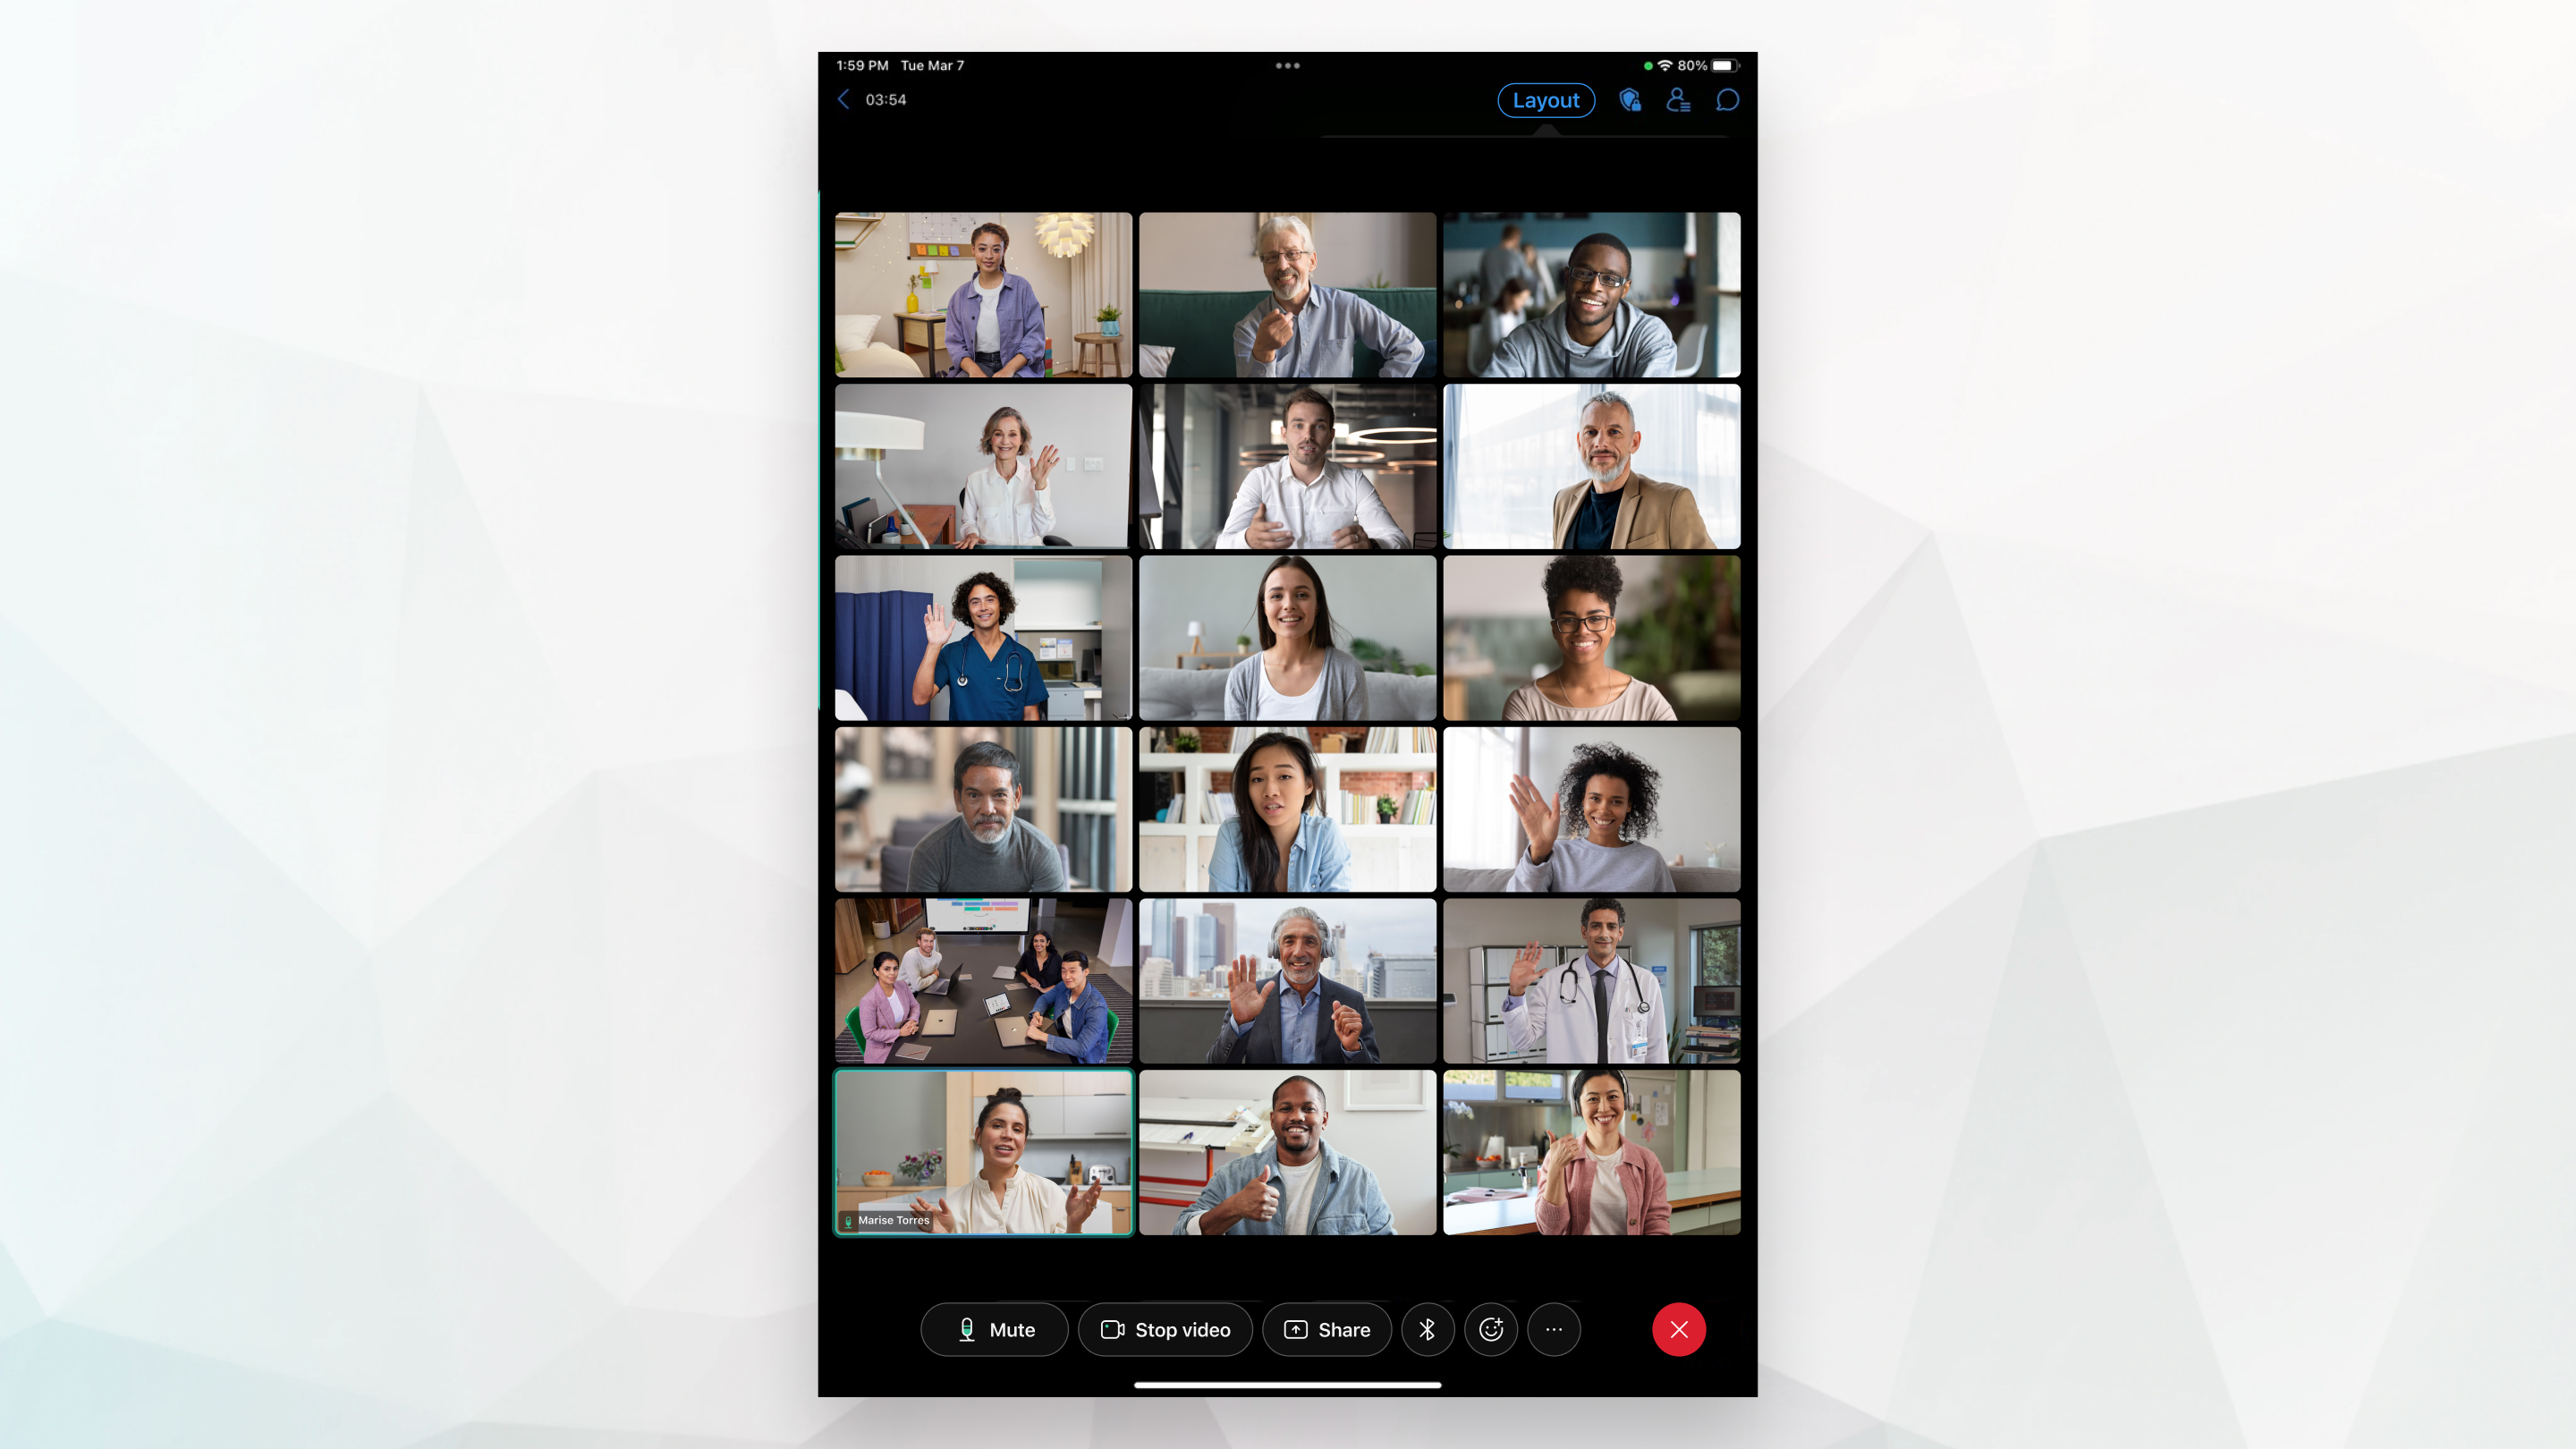 3x6 vizualizare caroiaj în timpul unei întâlniri pe iPad